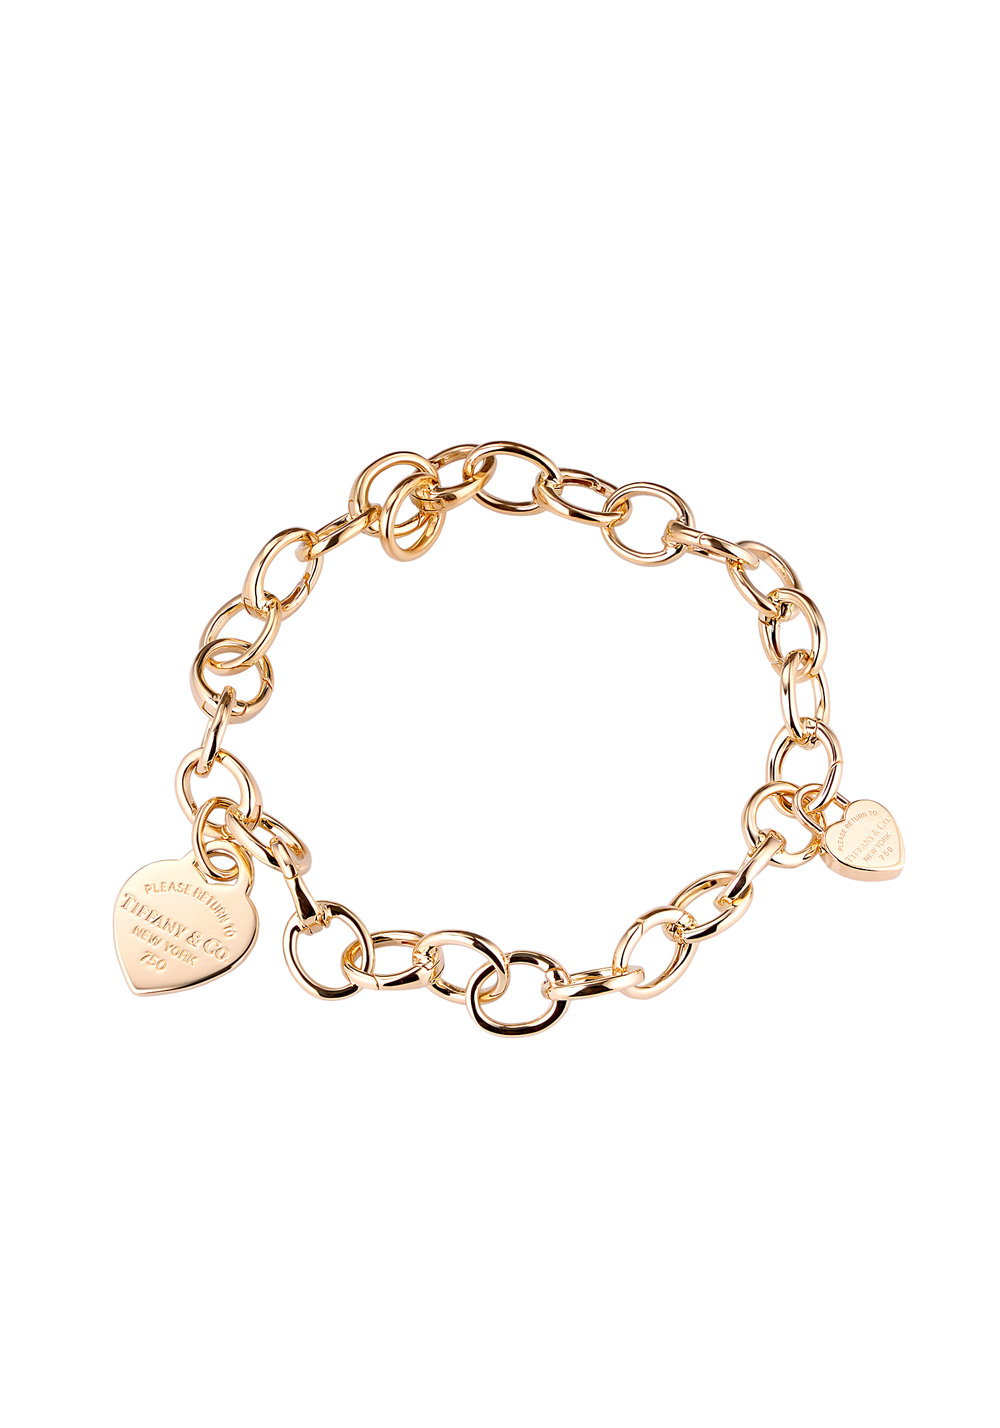 Браслет Tiffany \u0026 Co Return to Tiffany™ heart tag Charm and Bracelet(22312) купить в Москве, выгодная цена - ломбард на Кутузовском